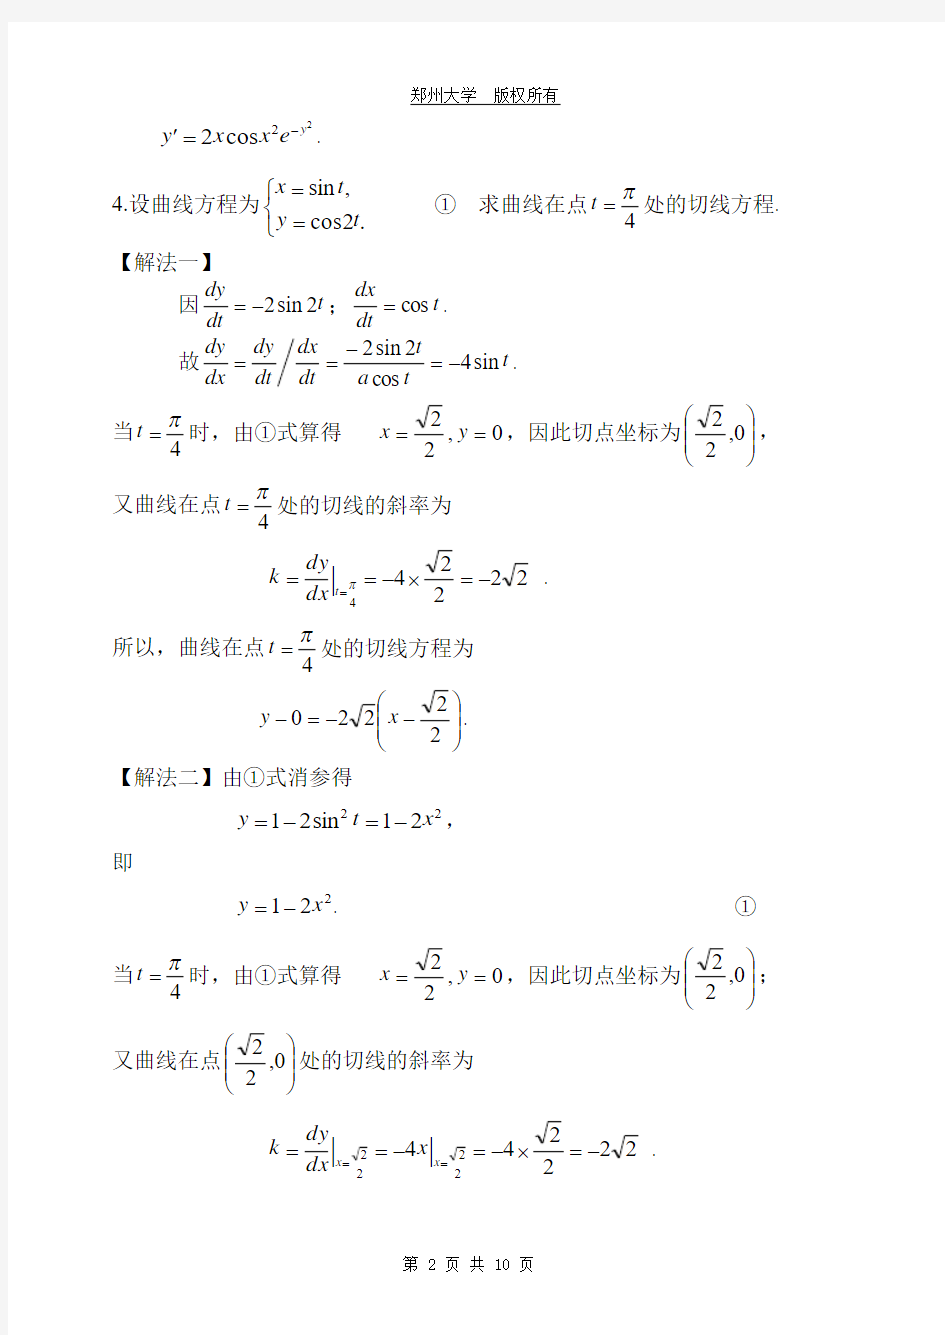 郑州大学2013级上学期期末考试微A积分(上)试题(卷)及其参考答案 (1)